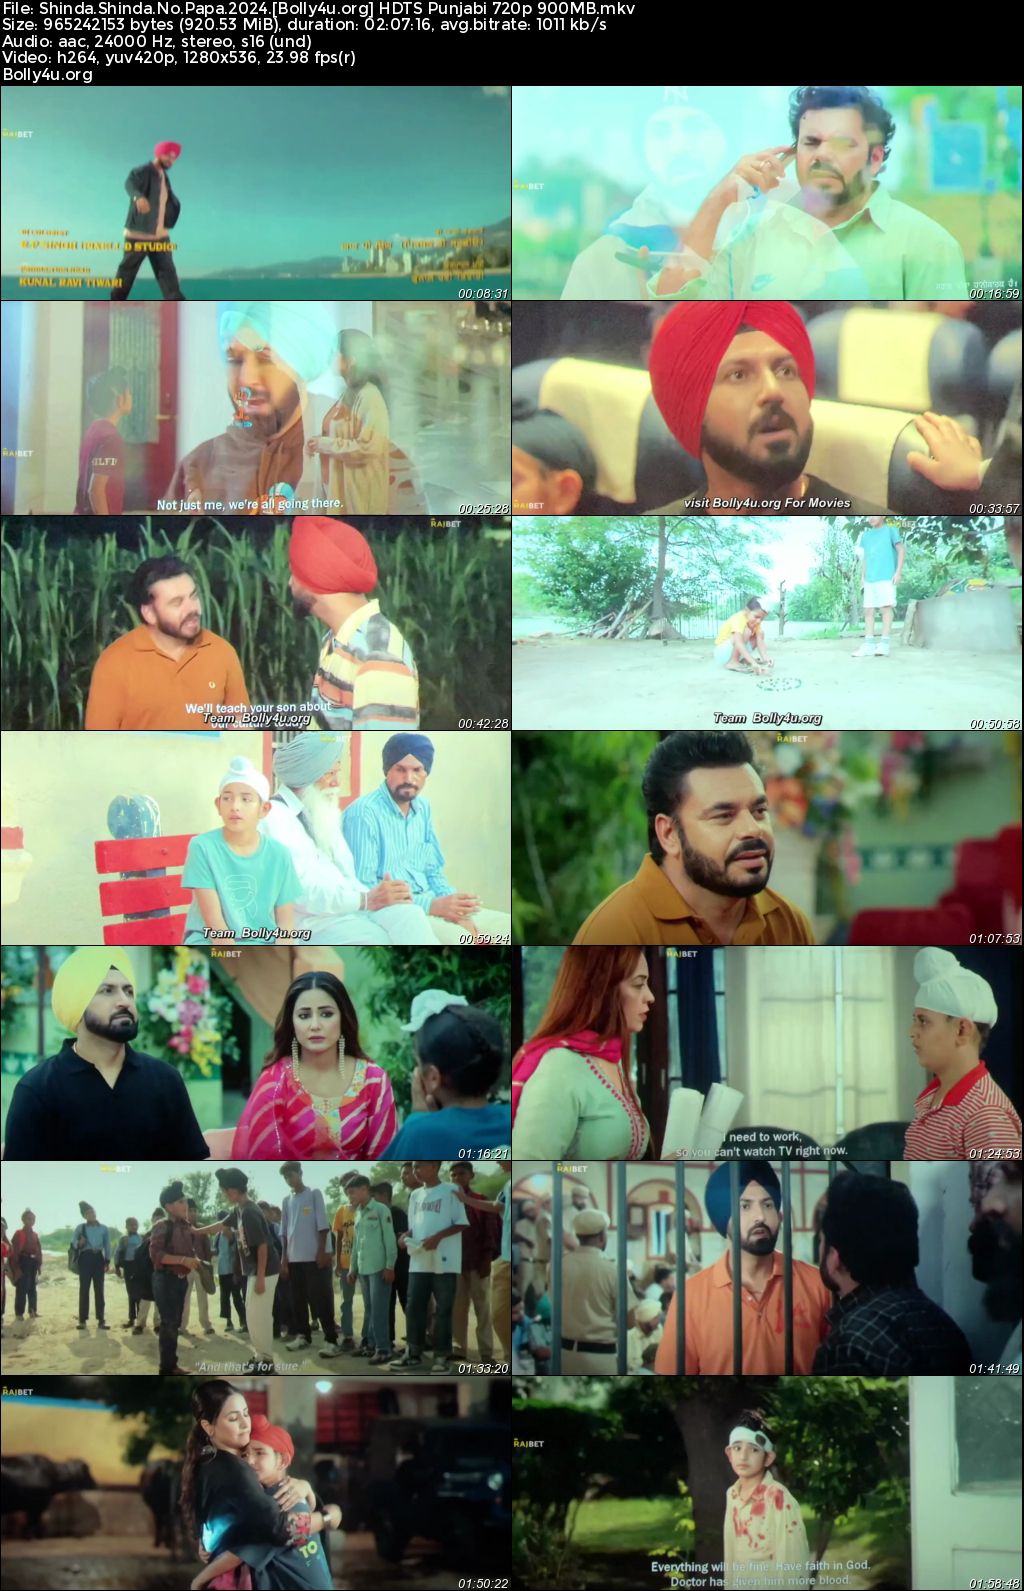 Shinda Shinda No Papa 2024 HDTS Punjabi Full Movie Download 1080p 720p 480p